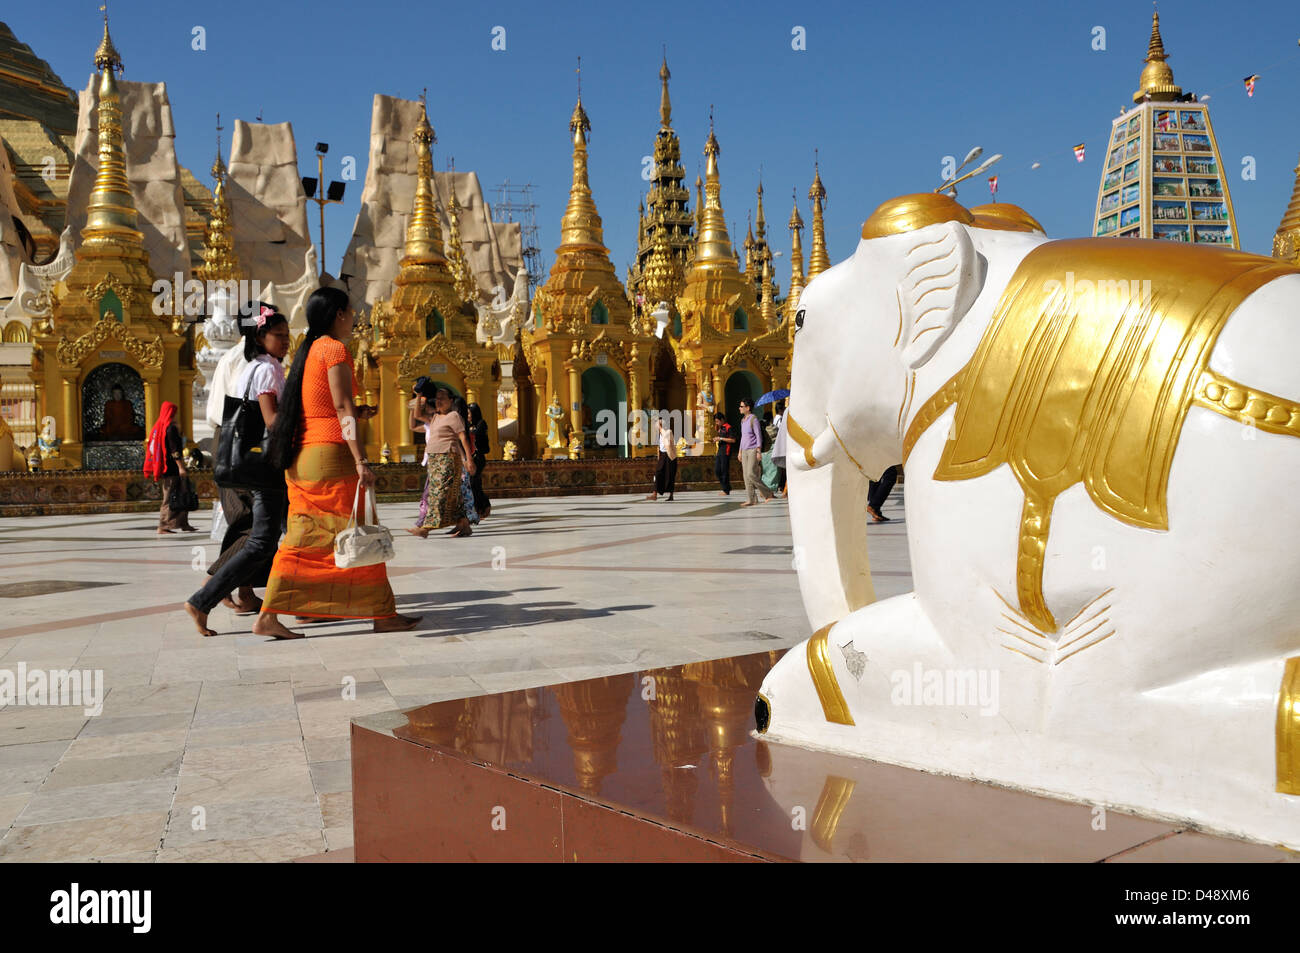 Elephant Statue and Visitors, Shwedagon Pagoda, Yangon, Myanmar Stock Photo